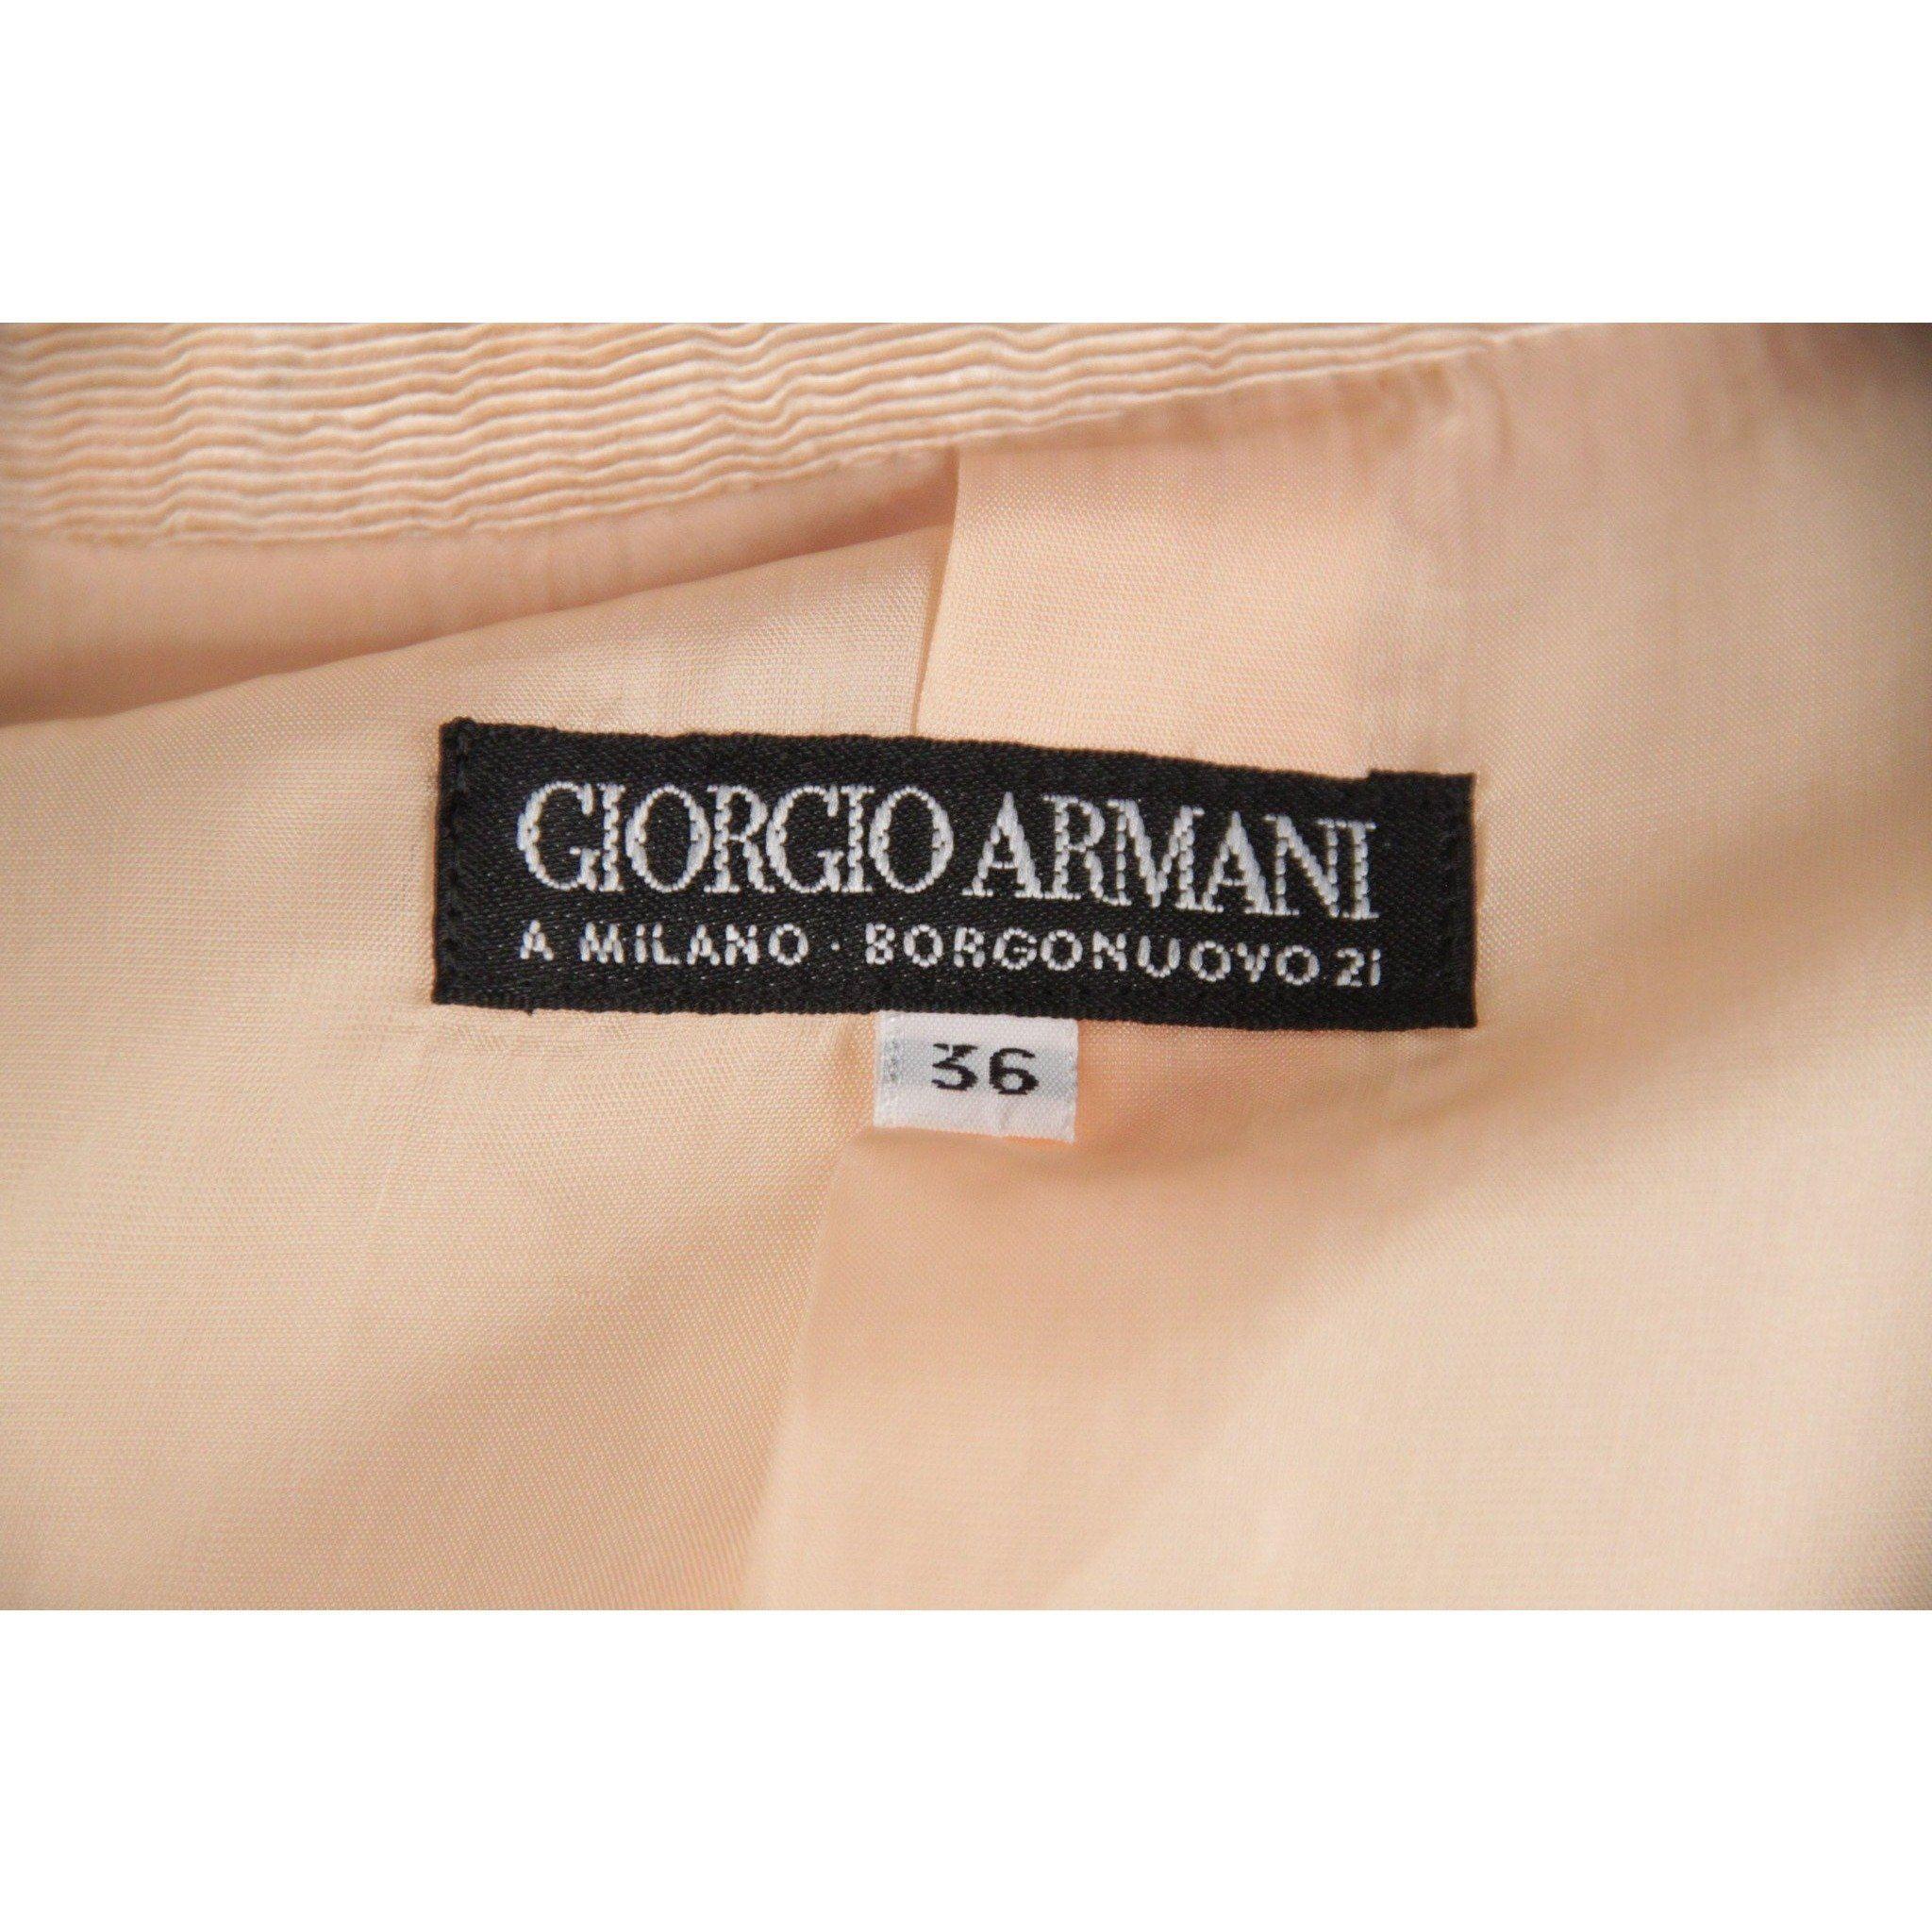 GIORGIO ARMANI BLACK LABEL Peach WOMEN SUIT Blazer & Wide Trousers 1